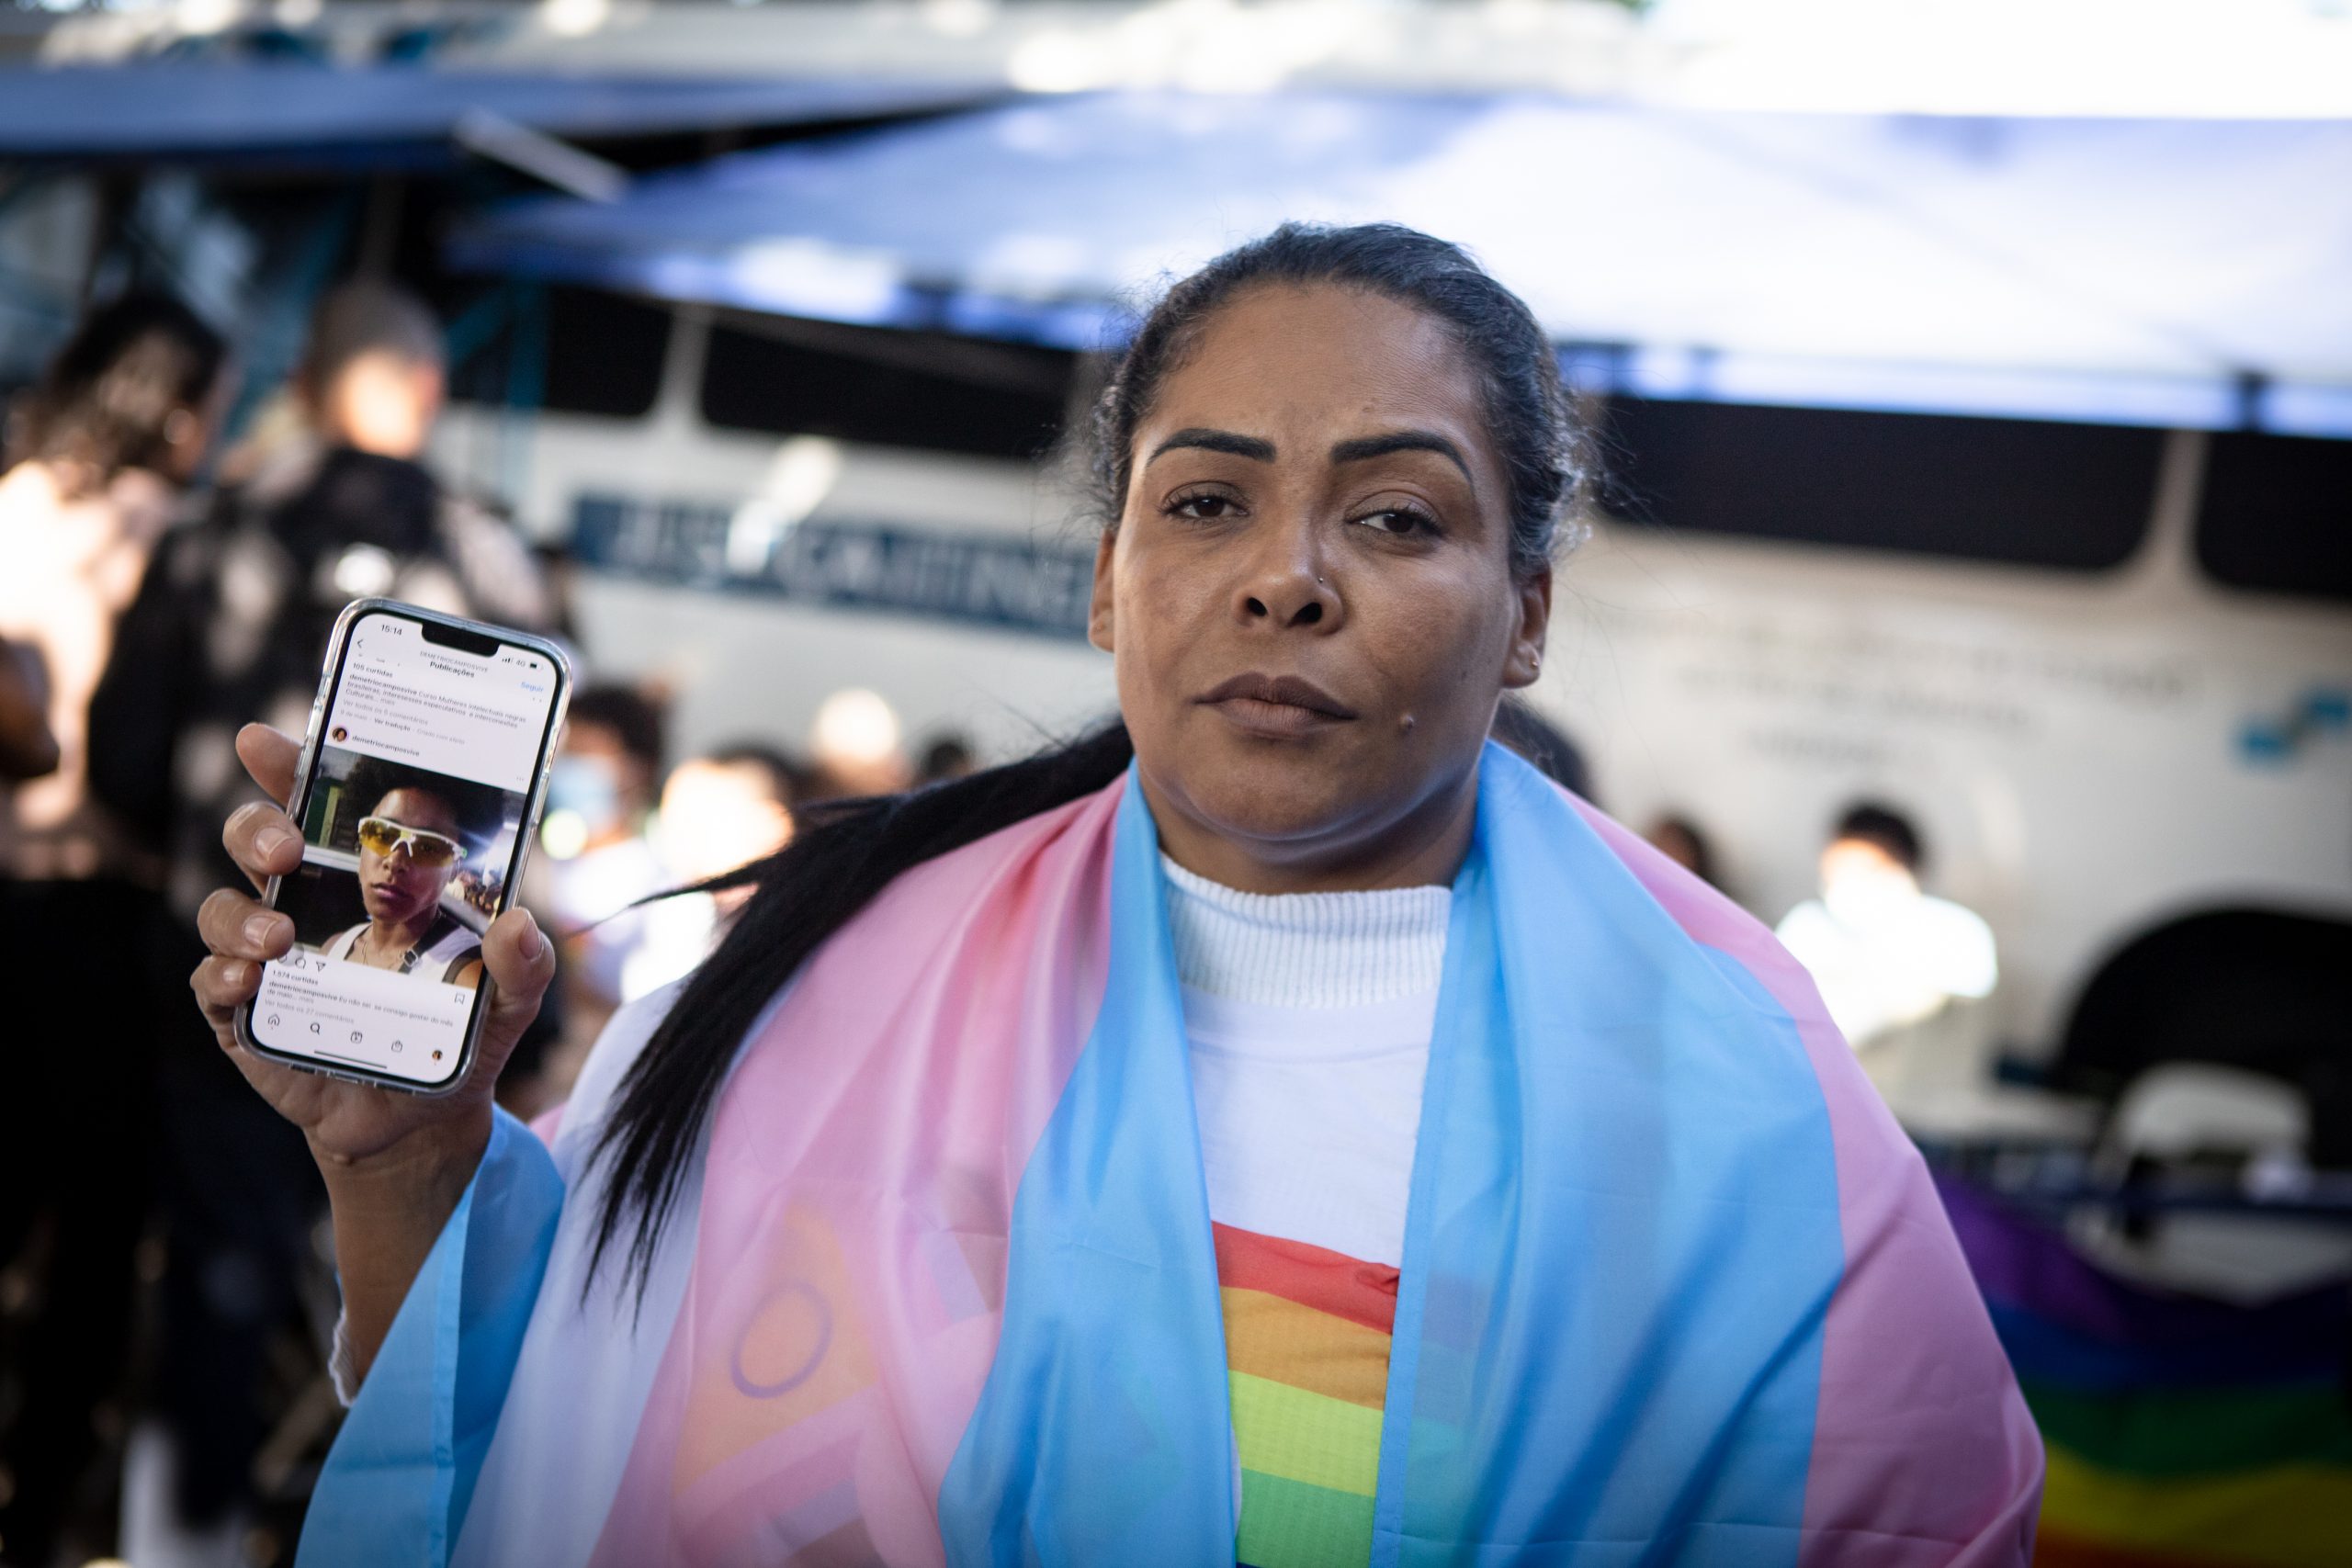 Ivoni Campos fez a retificacao pós mortem do nome do filho trans que se suicidou esse ano. (Foto: Zo Guimaraes/UOL)